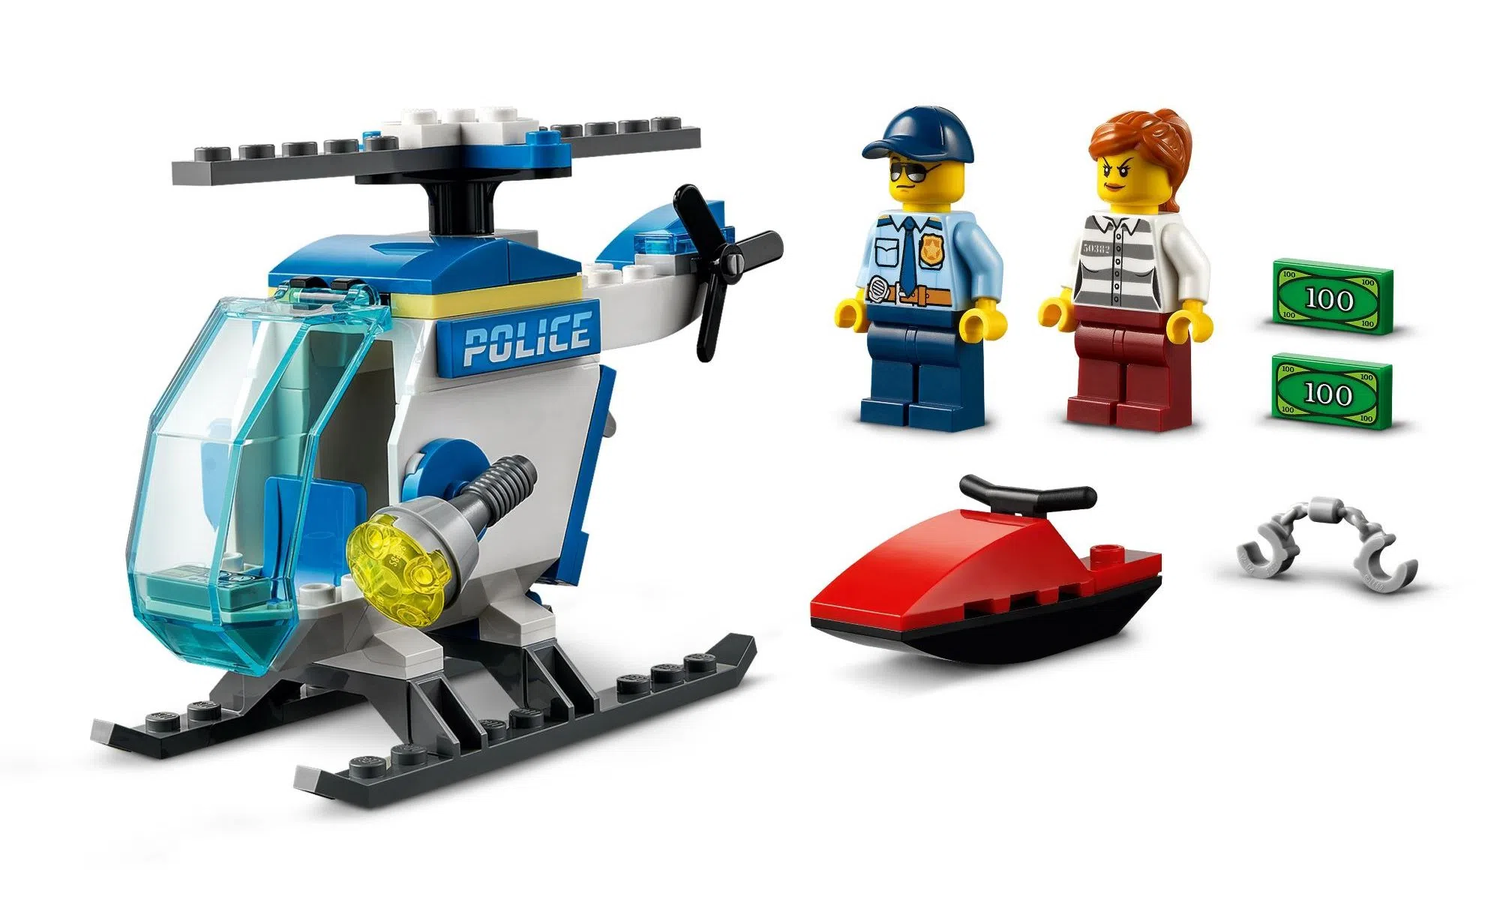 Helicóptero da Polícia Lego City